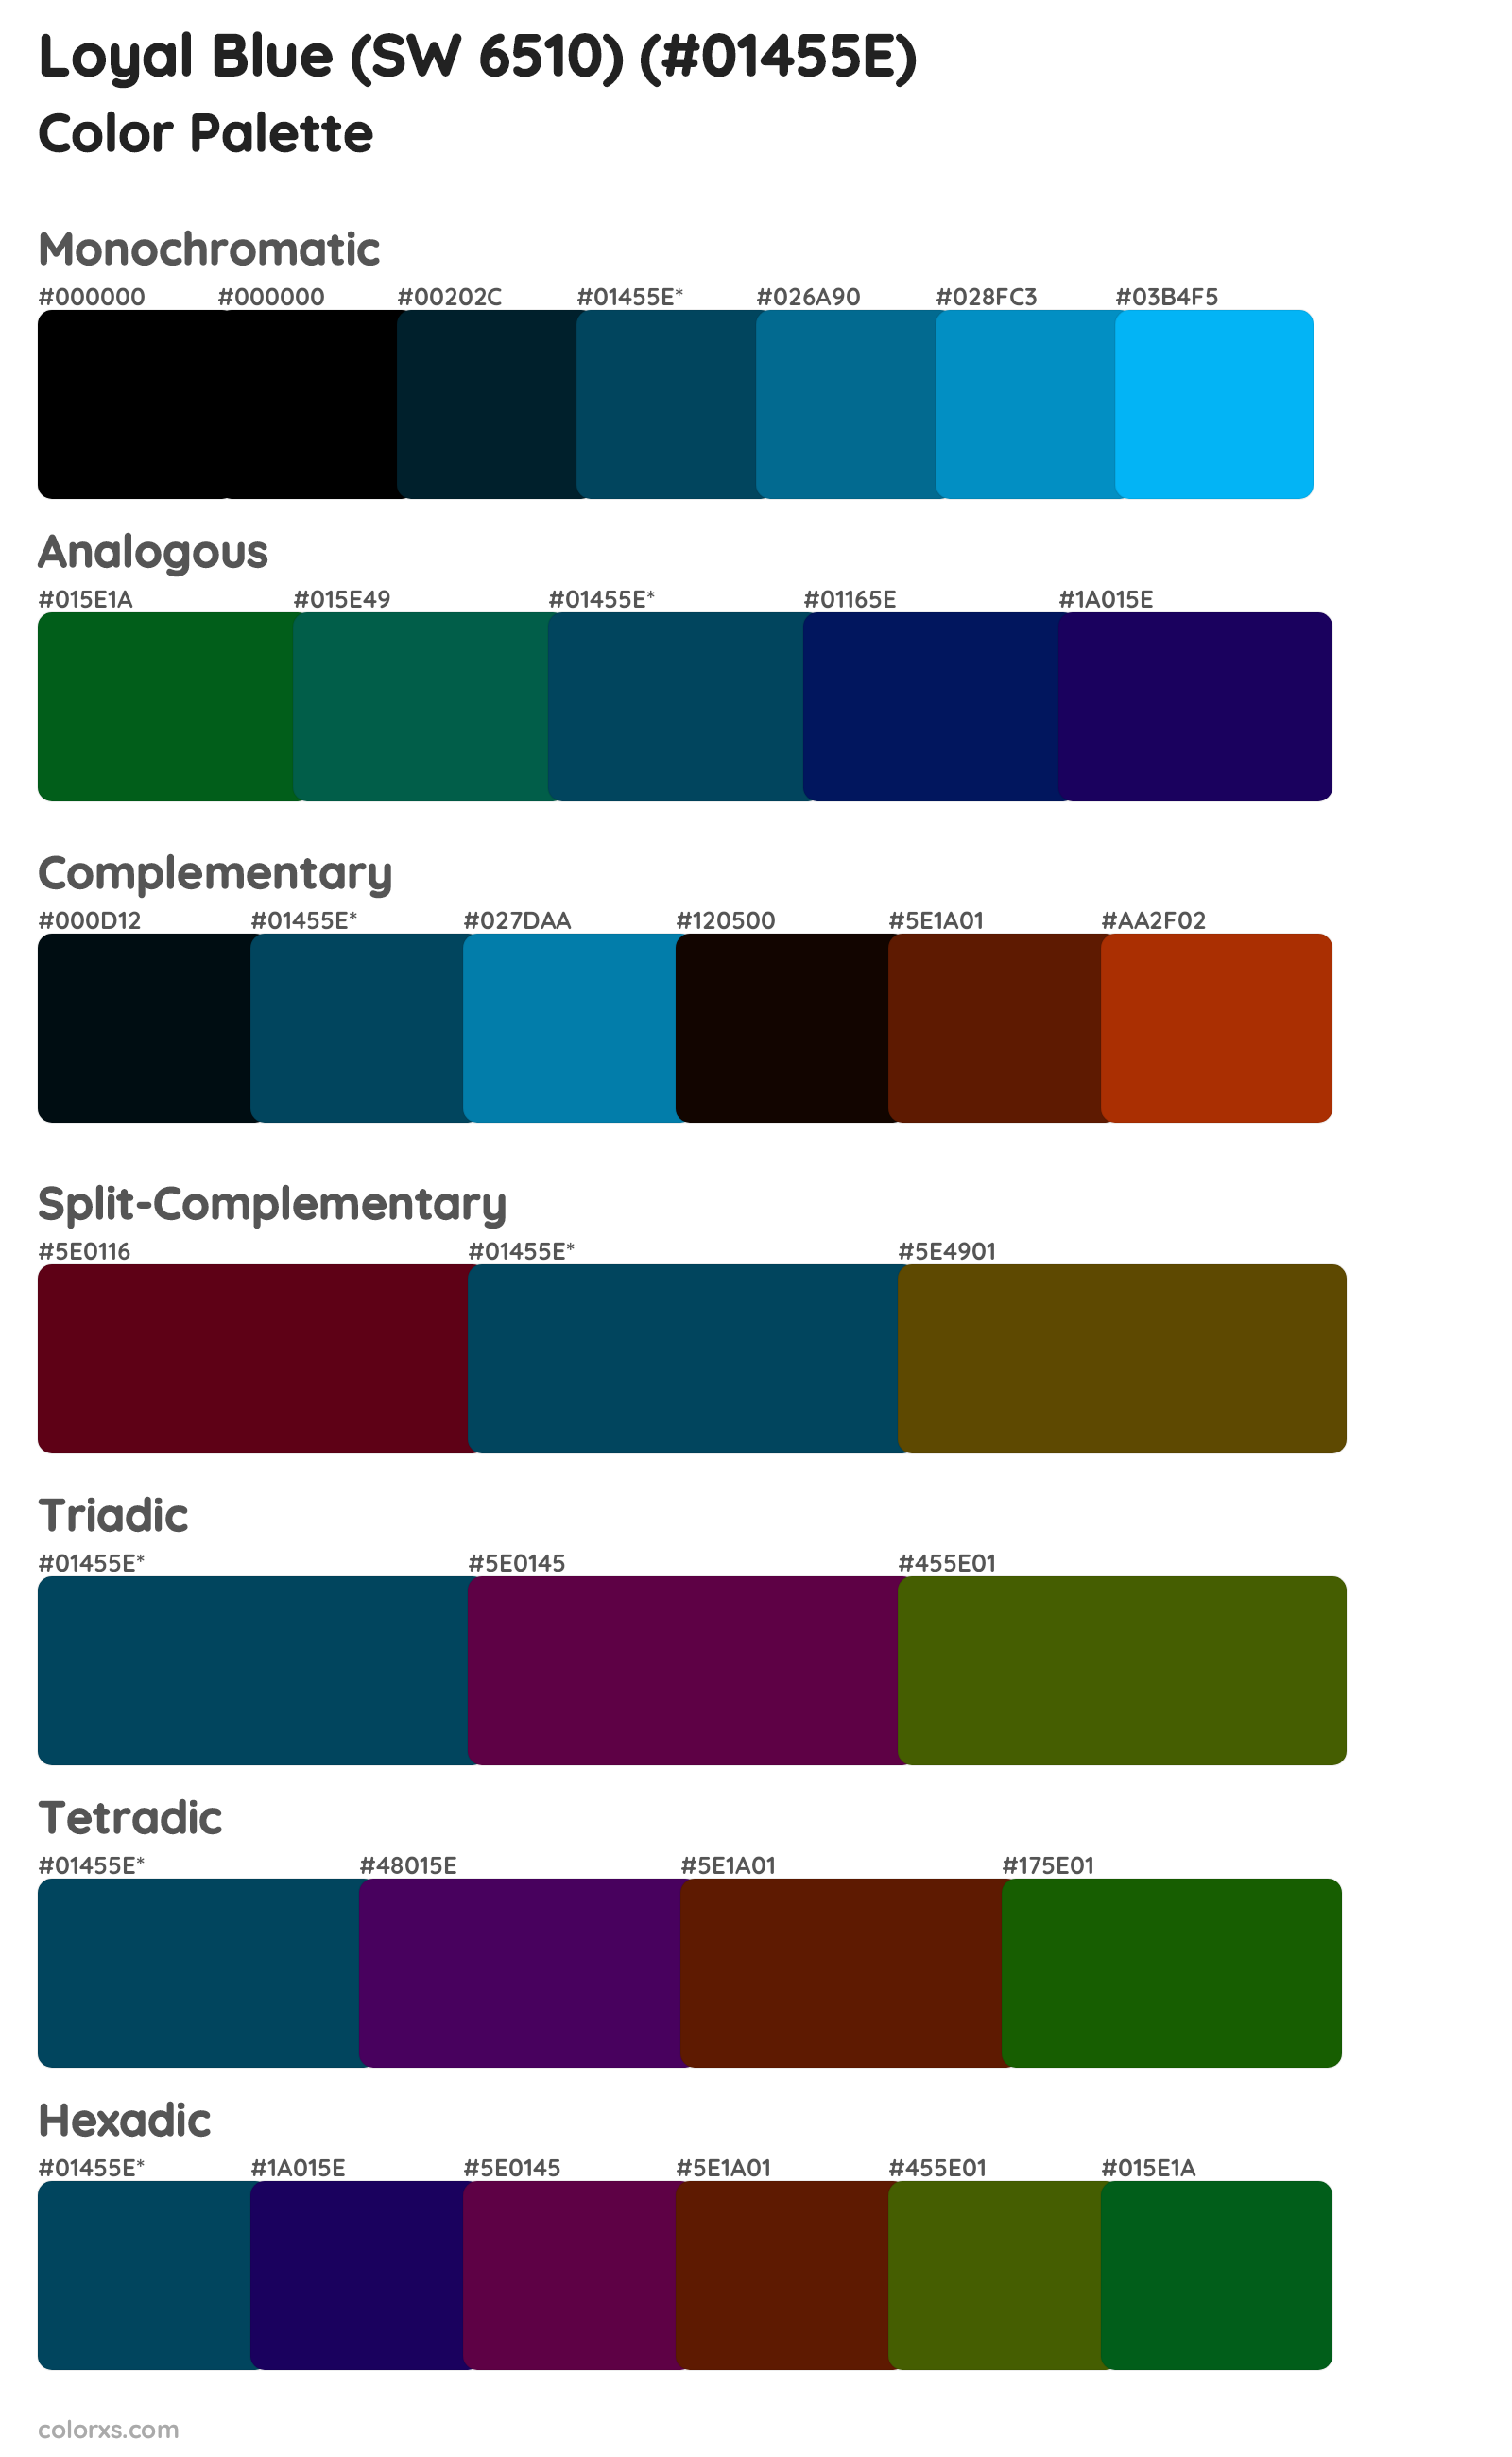 Loyal Blue (SW 6510) Color Scheme Palettes